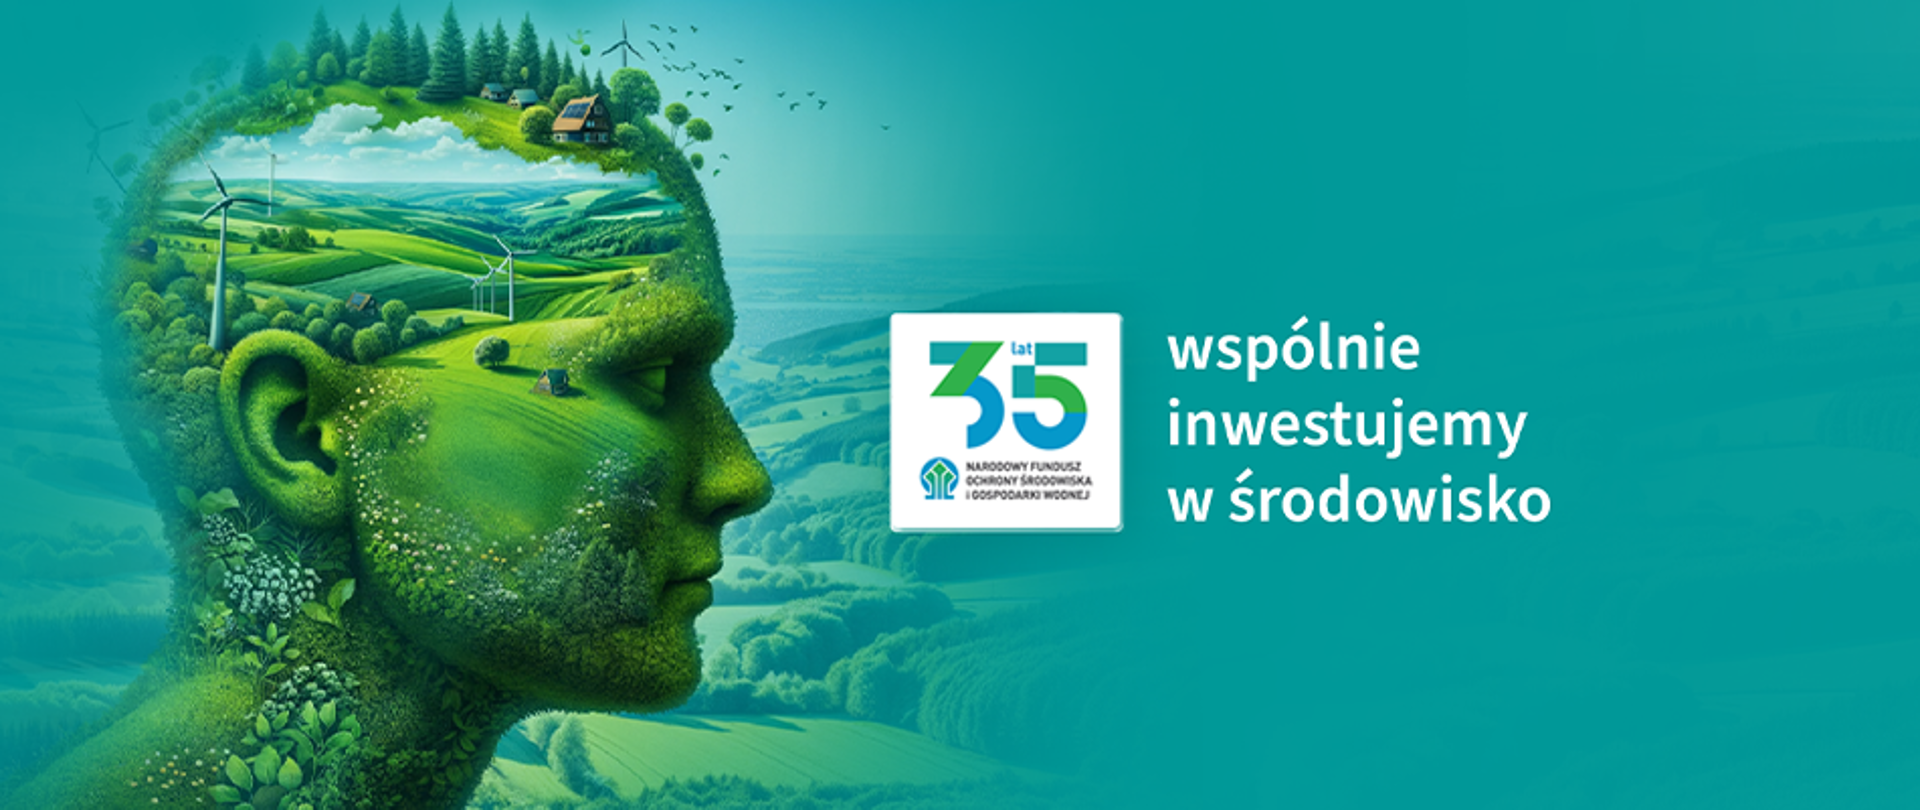 Wizualizacja - człowiek patrzący w zieloną przyszłość. Po prawej stronie logotyp: 35 lat Narodowy Fundusz Ochrony Środowiska i Gospodarki Wodnej, poniżej napis: "Wspólnie inwestujemy w środowisko".